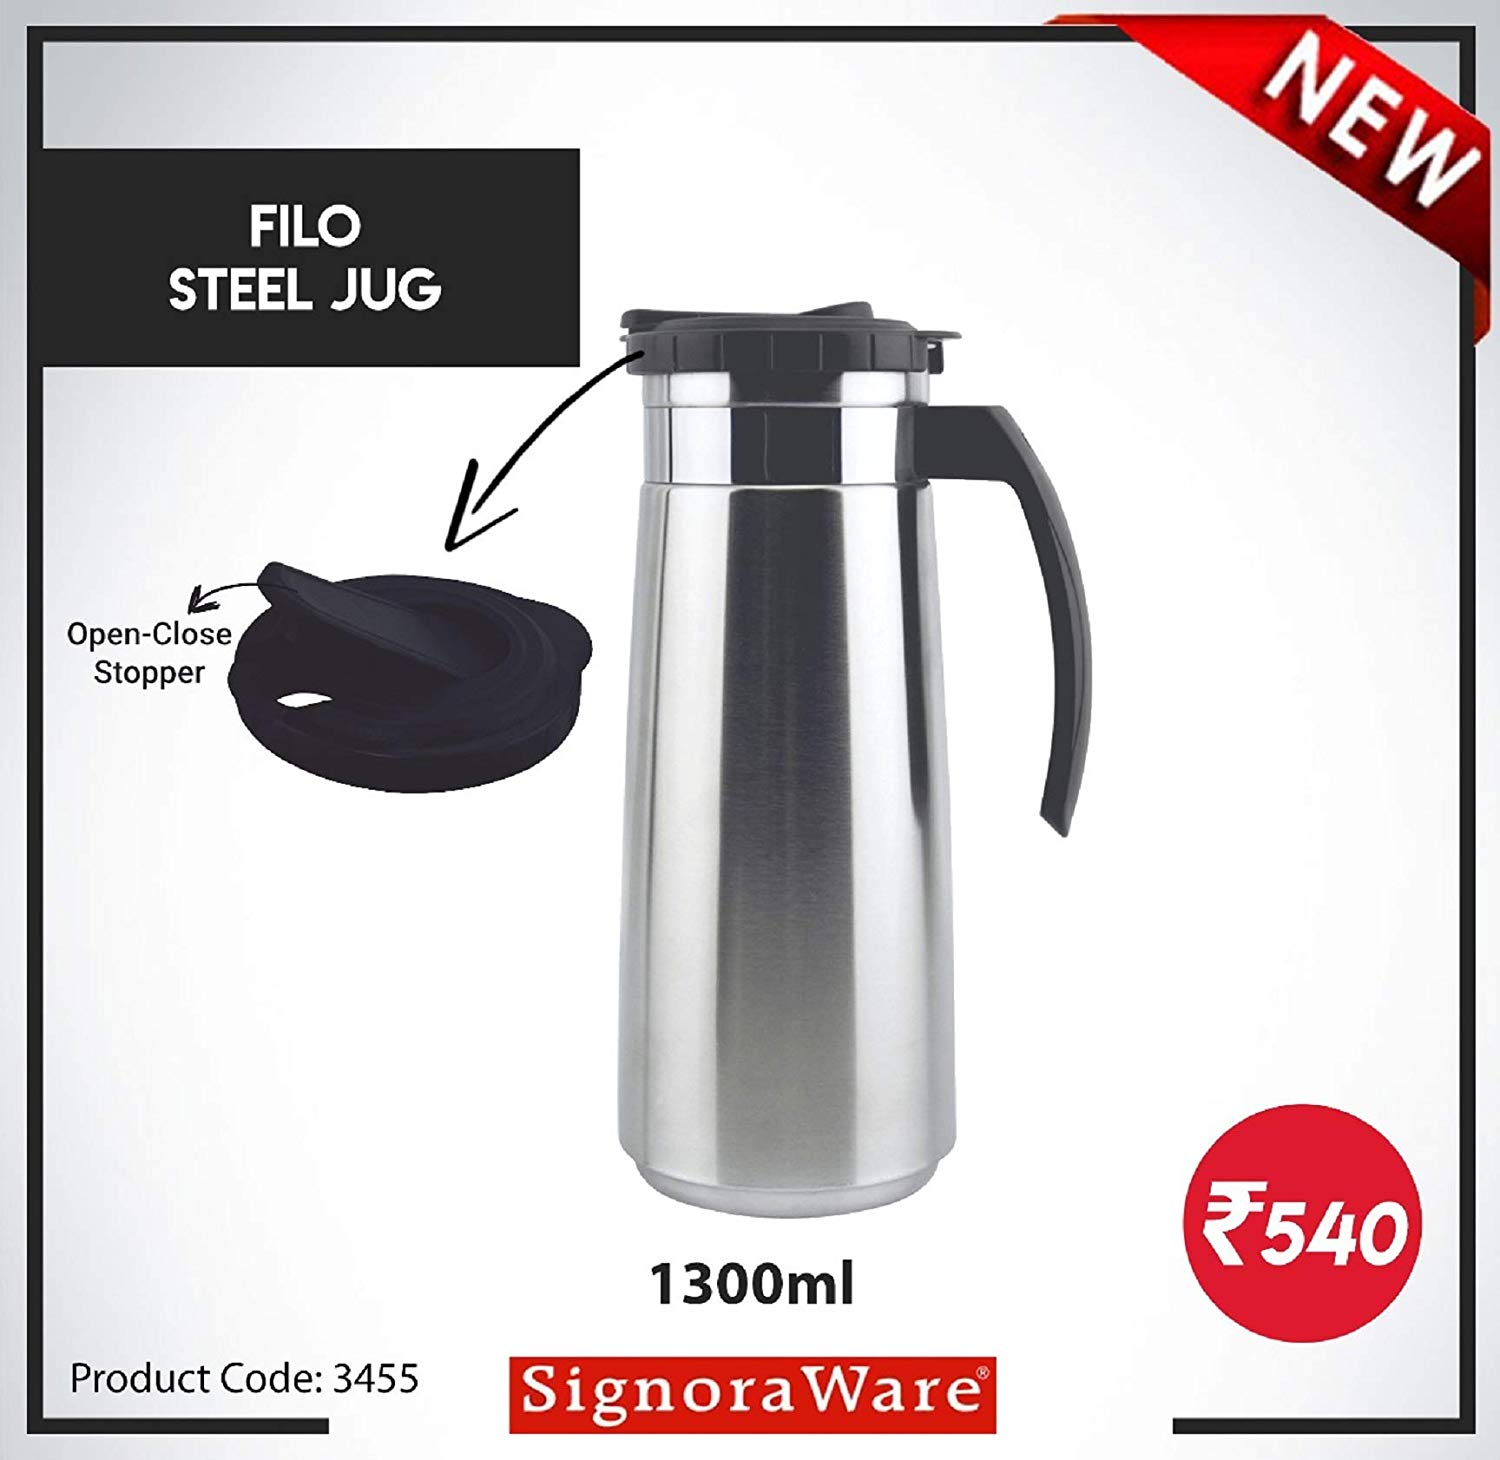 Signoraware Filo Steel Jug 1.3ltr, Silver